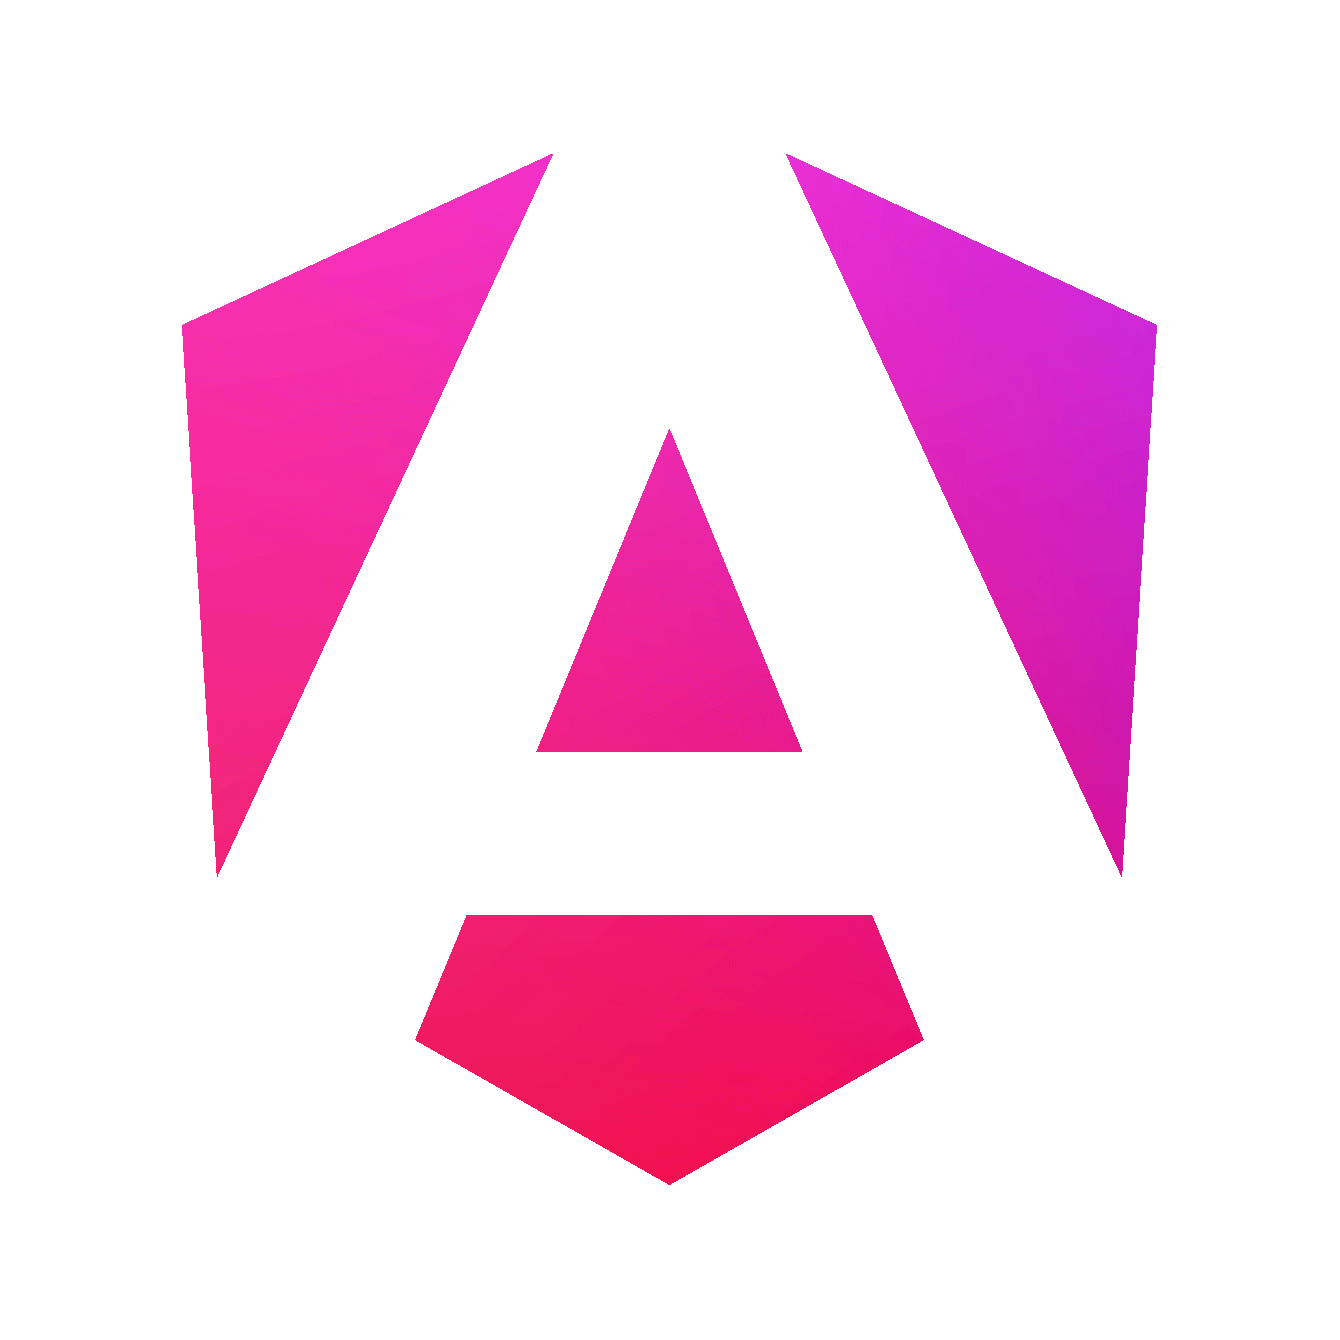 Novo logo do Angular, composto por um escudo hexagonal com um gradiente de roxo até rosa e uma letra A na cor branca, centralizada e em negrito.